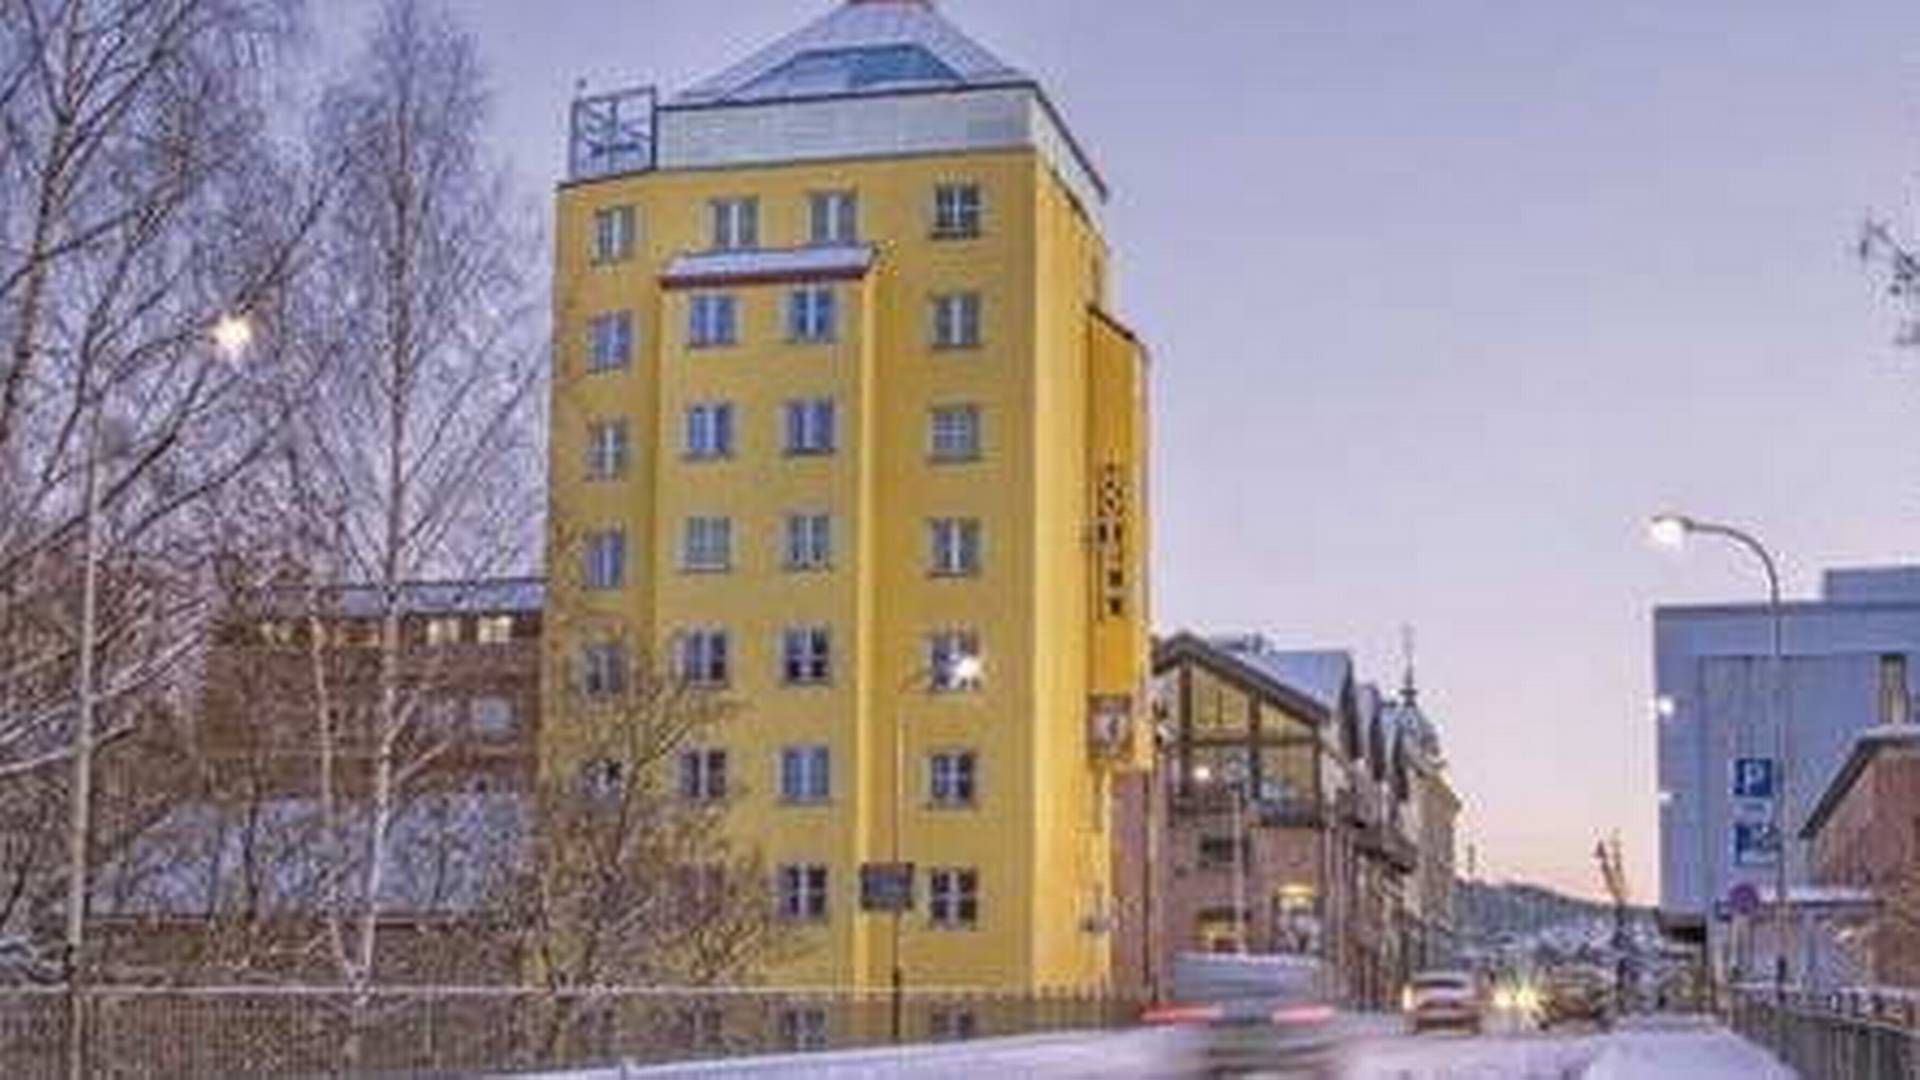 SOLGT: Aksjemøllen – by Classic Norway Hotels har skiftet eier. | Foto: Oslo Finans